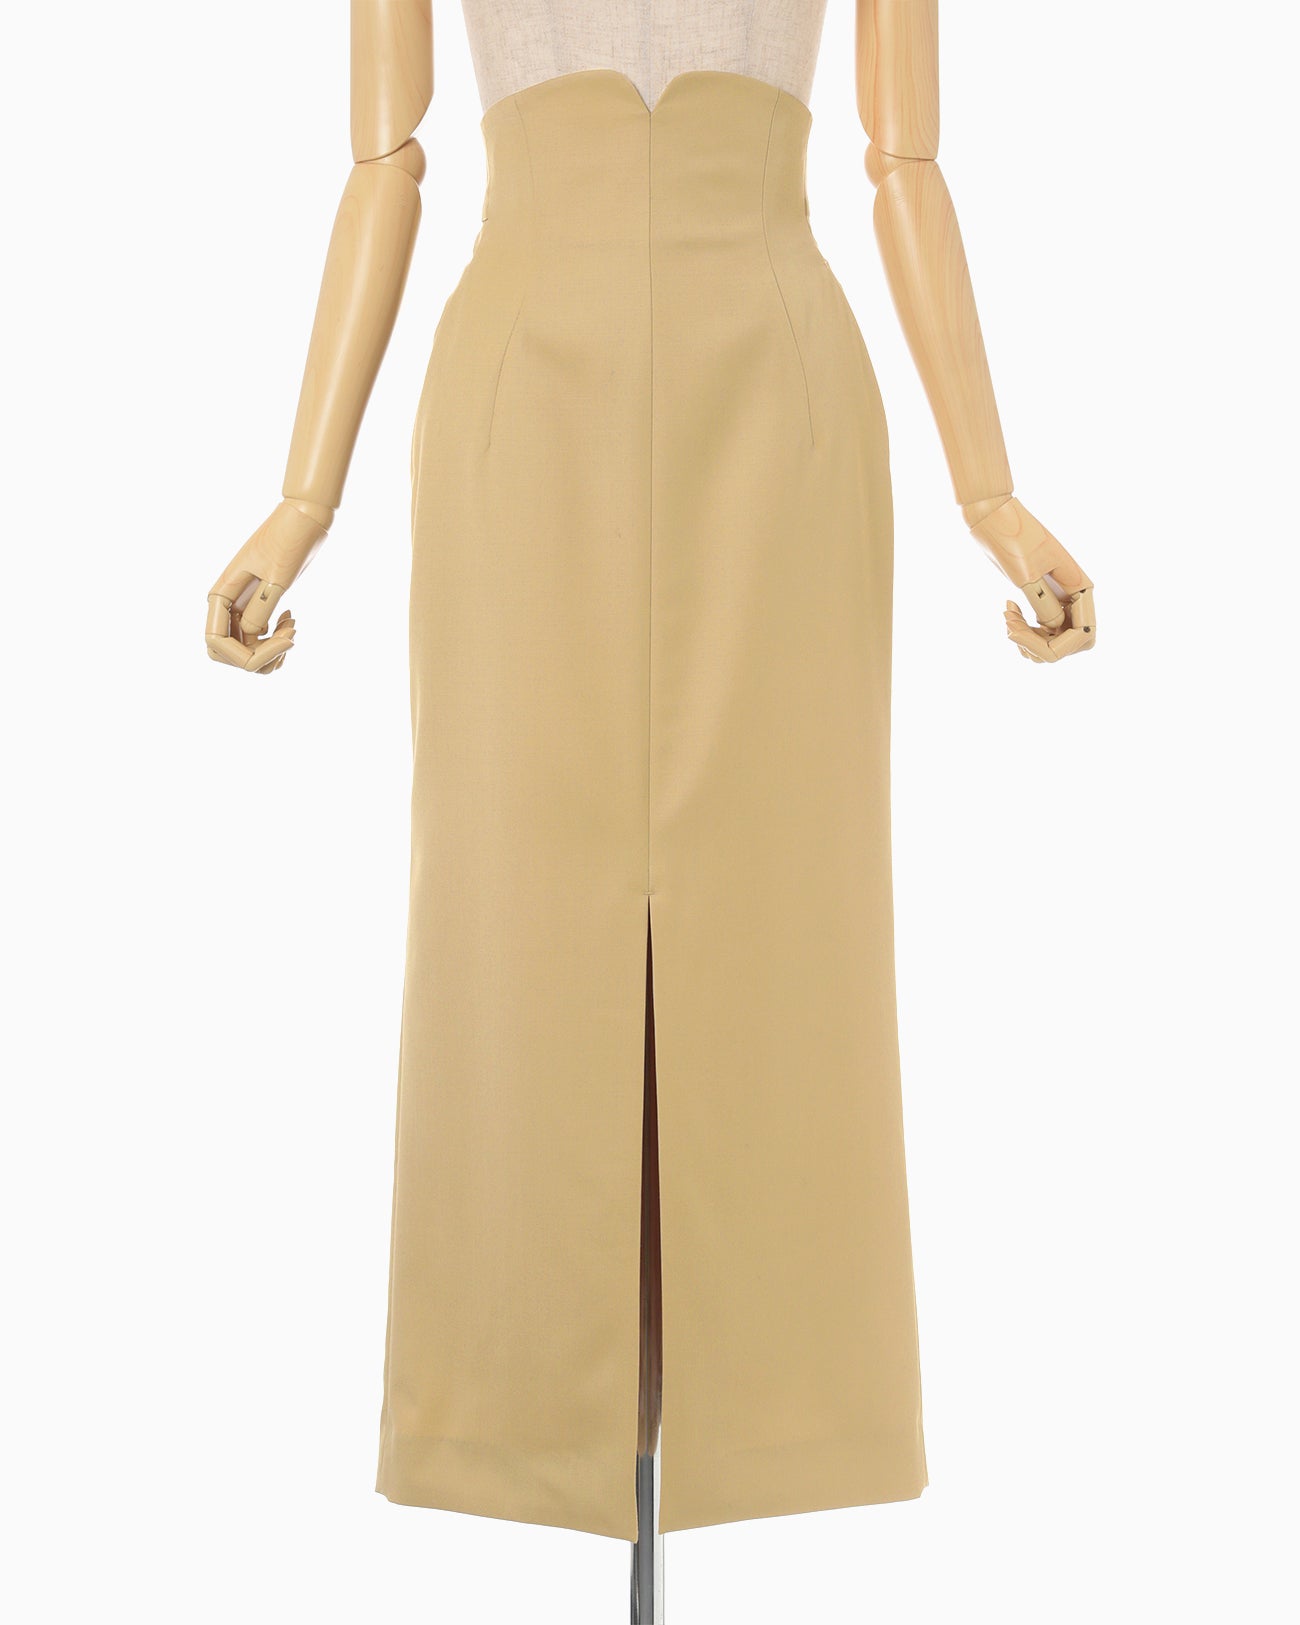 Wool Gabardine High Waisted Skirt - beige